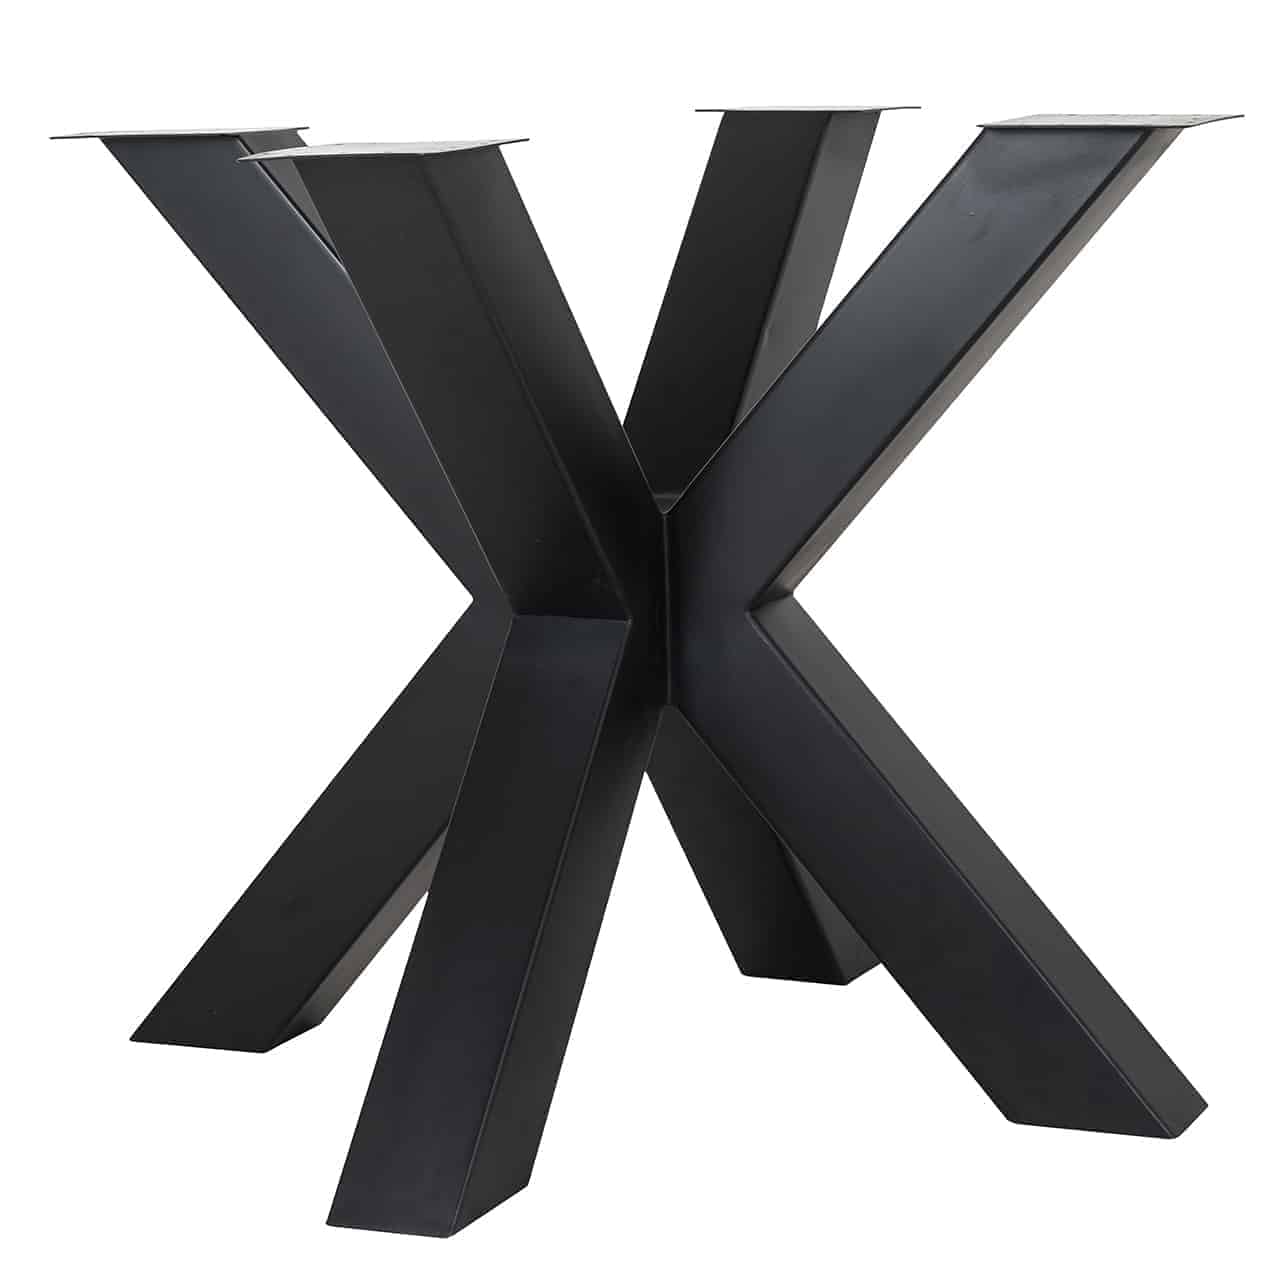 Tischgestell aus schwarzem Eisenplanken die zusammen ein doppeltes X bilden.